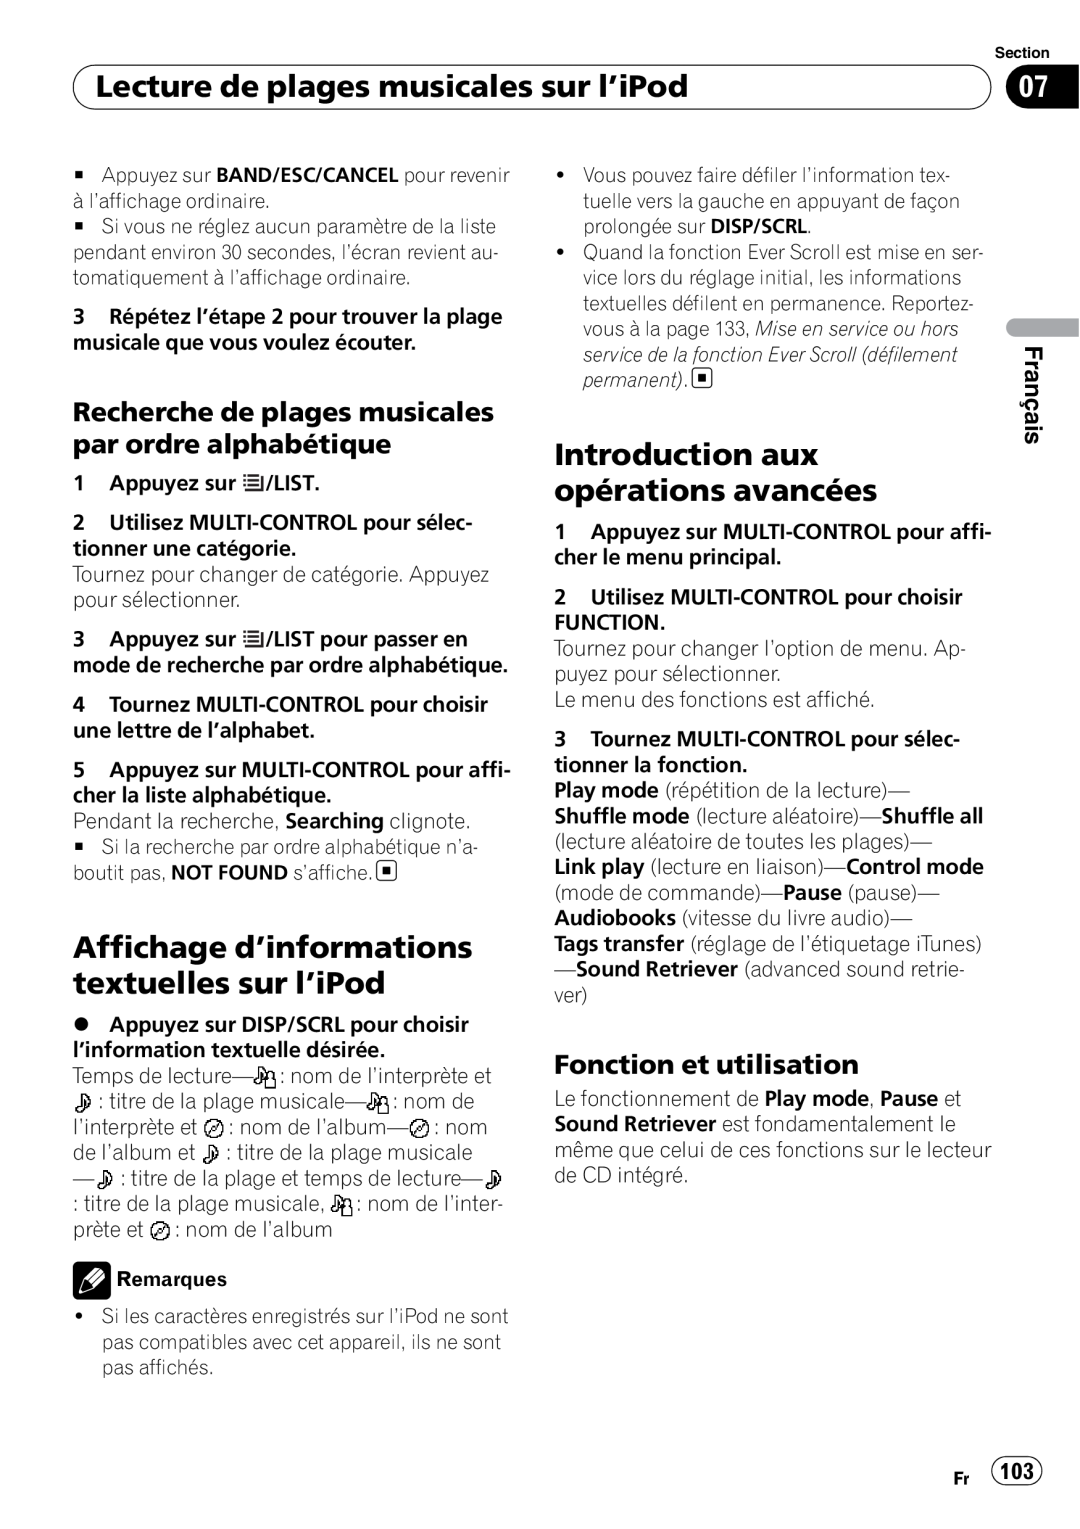 Pioneer DEH-P7100BT Lecture de plages musicales sur l’iPod, Affichage d’informations textuelles sur l’iPod, Français 